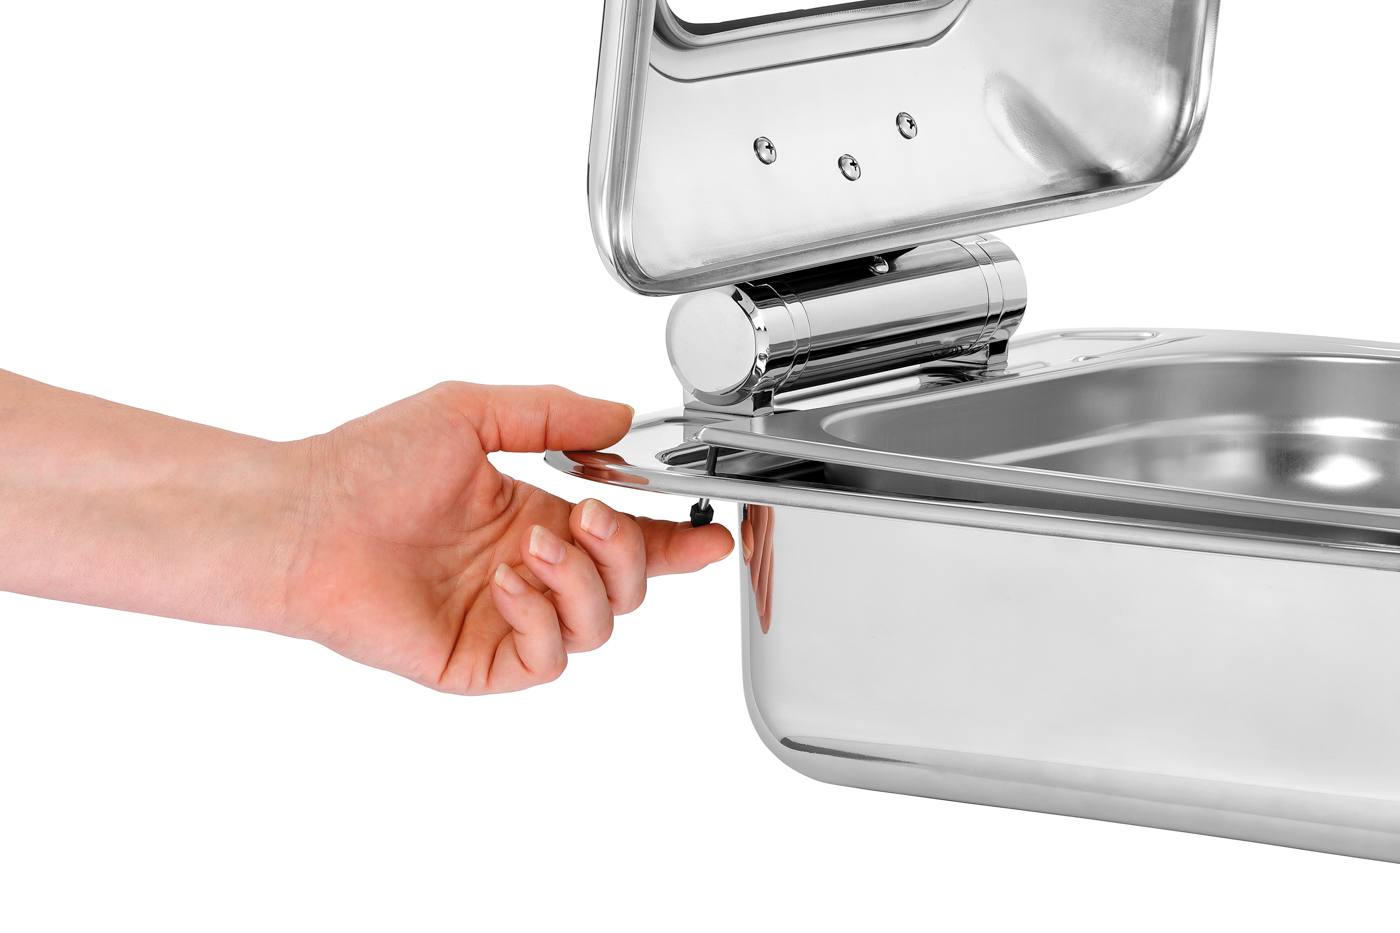 Bartscher Chafing-Dish 2/3 Flexible | Funktionen: Warmhalten | Maße: 40 x 41,8 x 195 cm. Gewicht: 5,5 kg